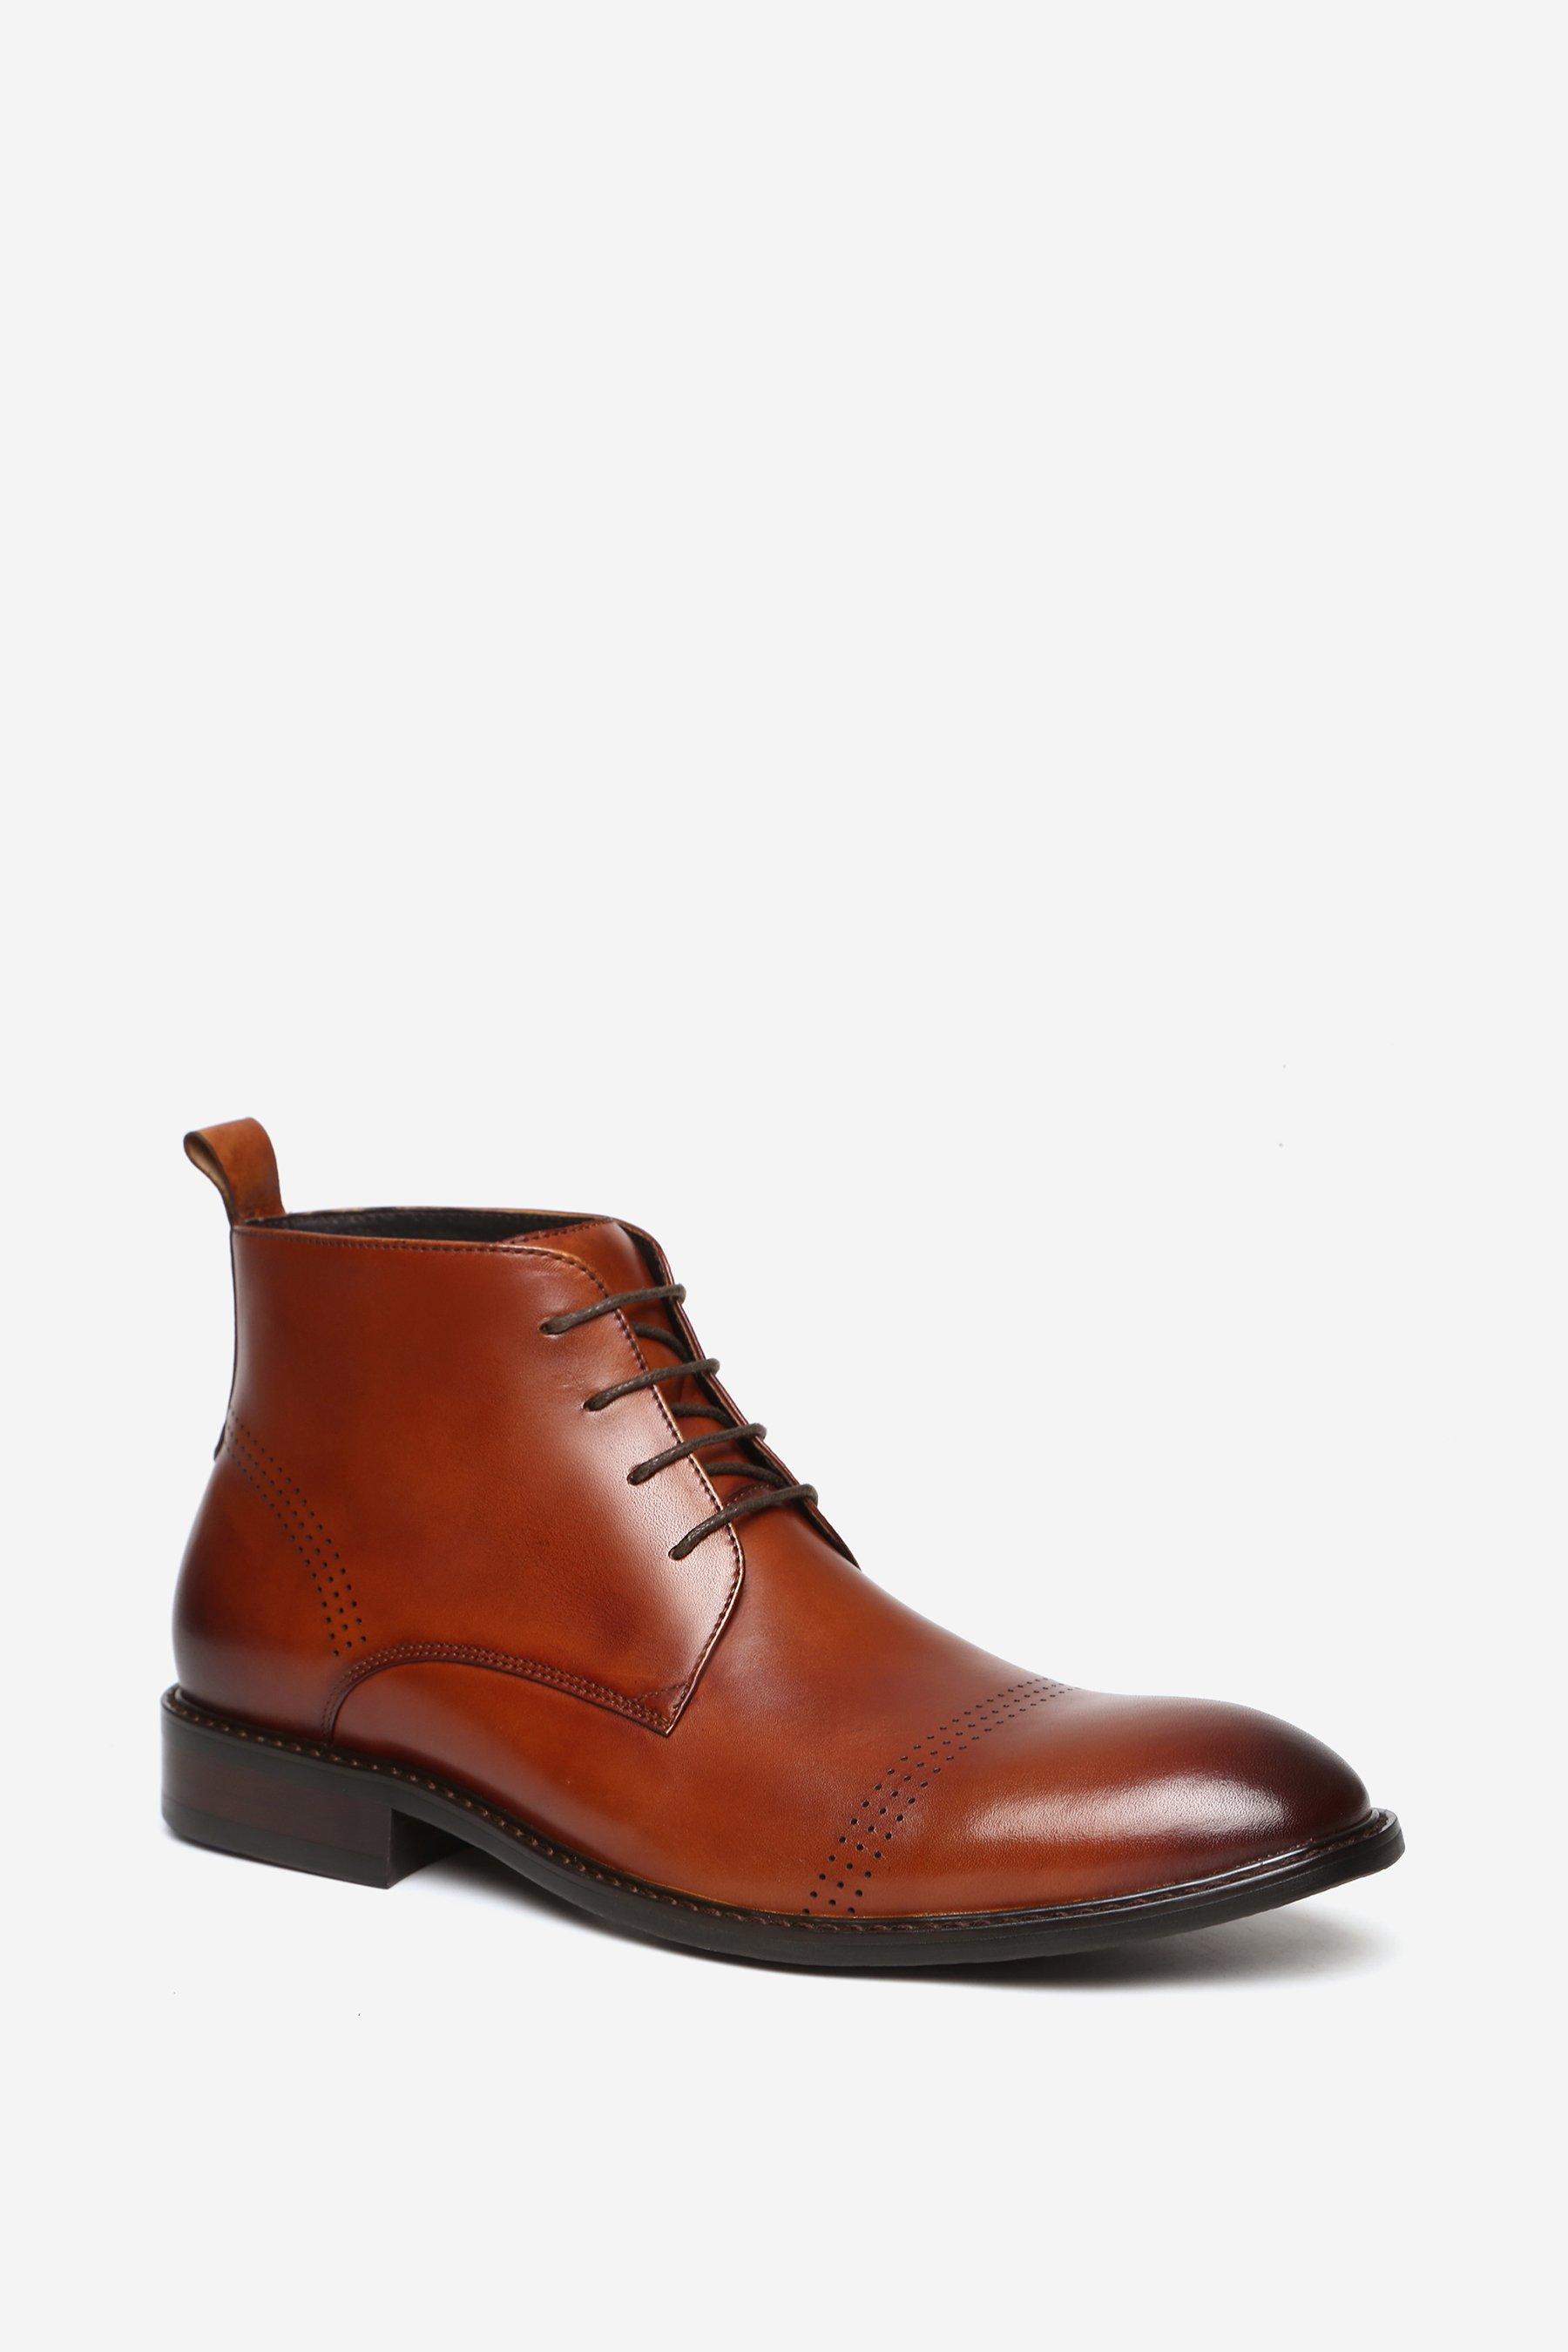 Кожаные ботинки дерби премиум-класса «Шерлок» Alexander Pace, коричневый